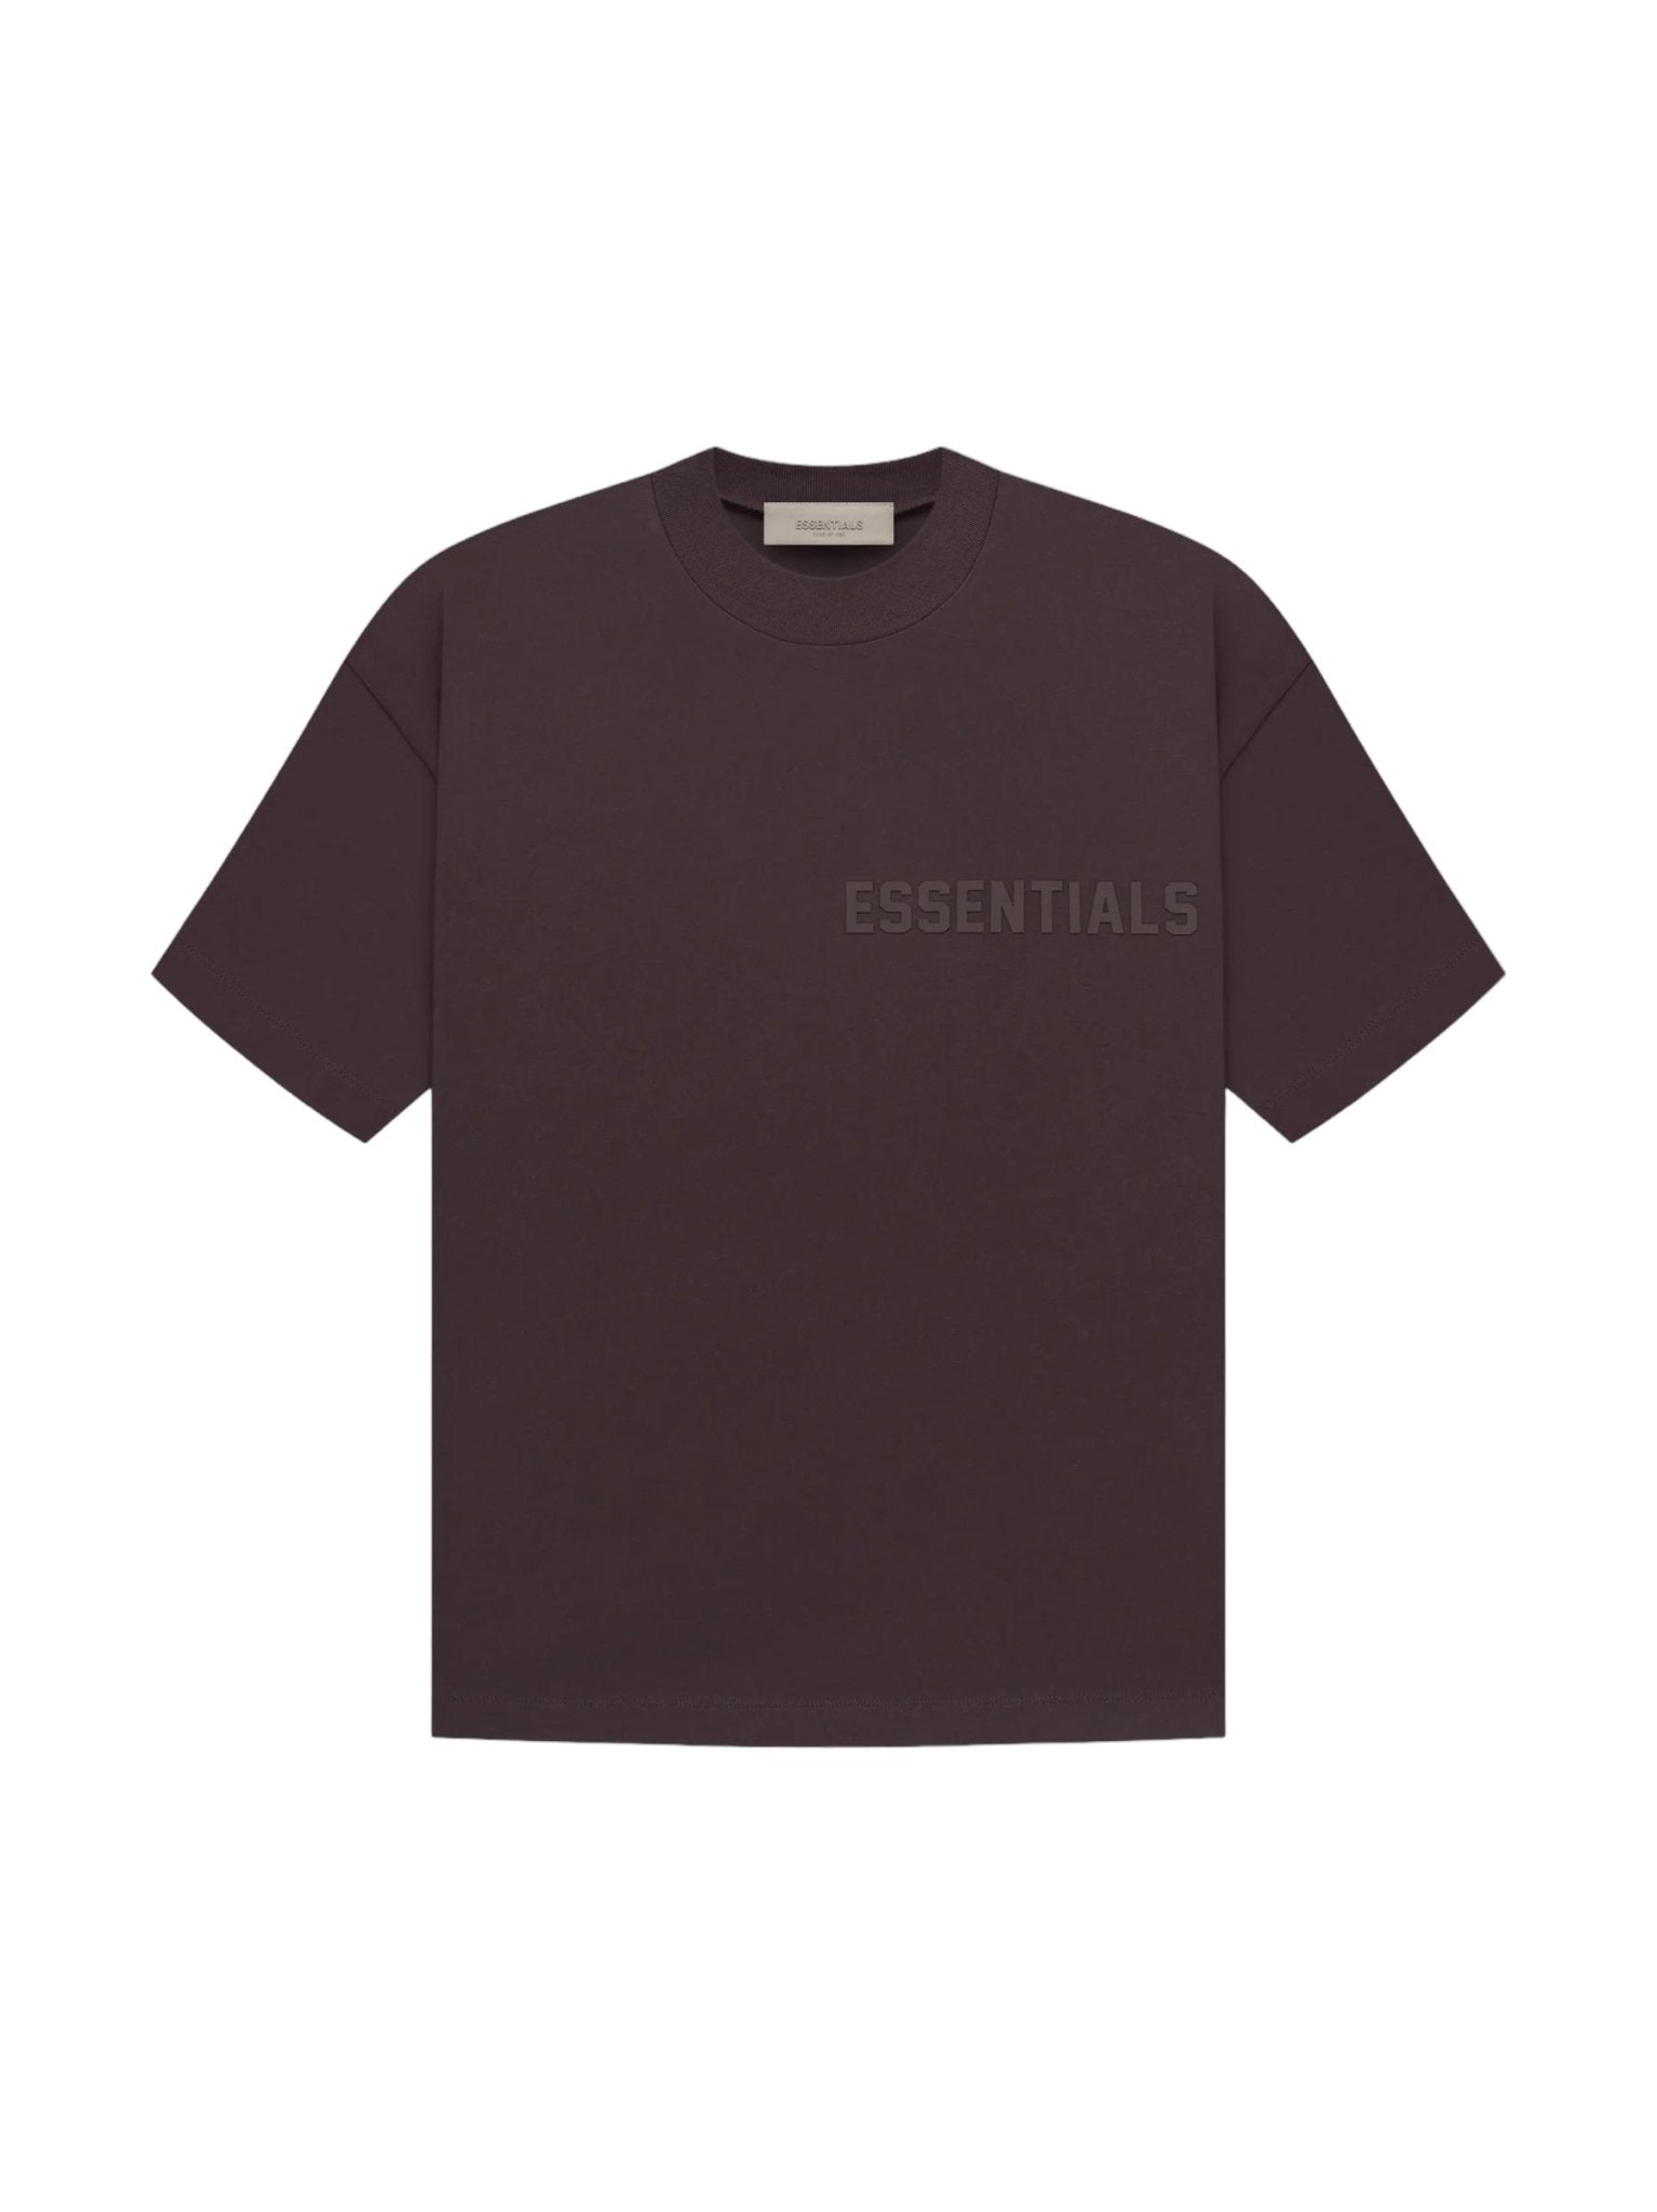 Fear of God Essentials T-shirt Plum